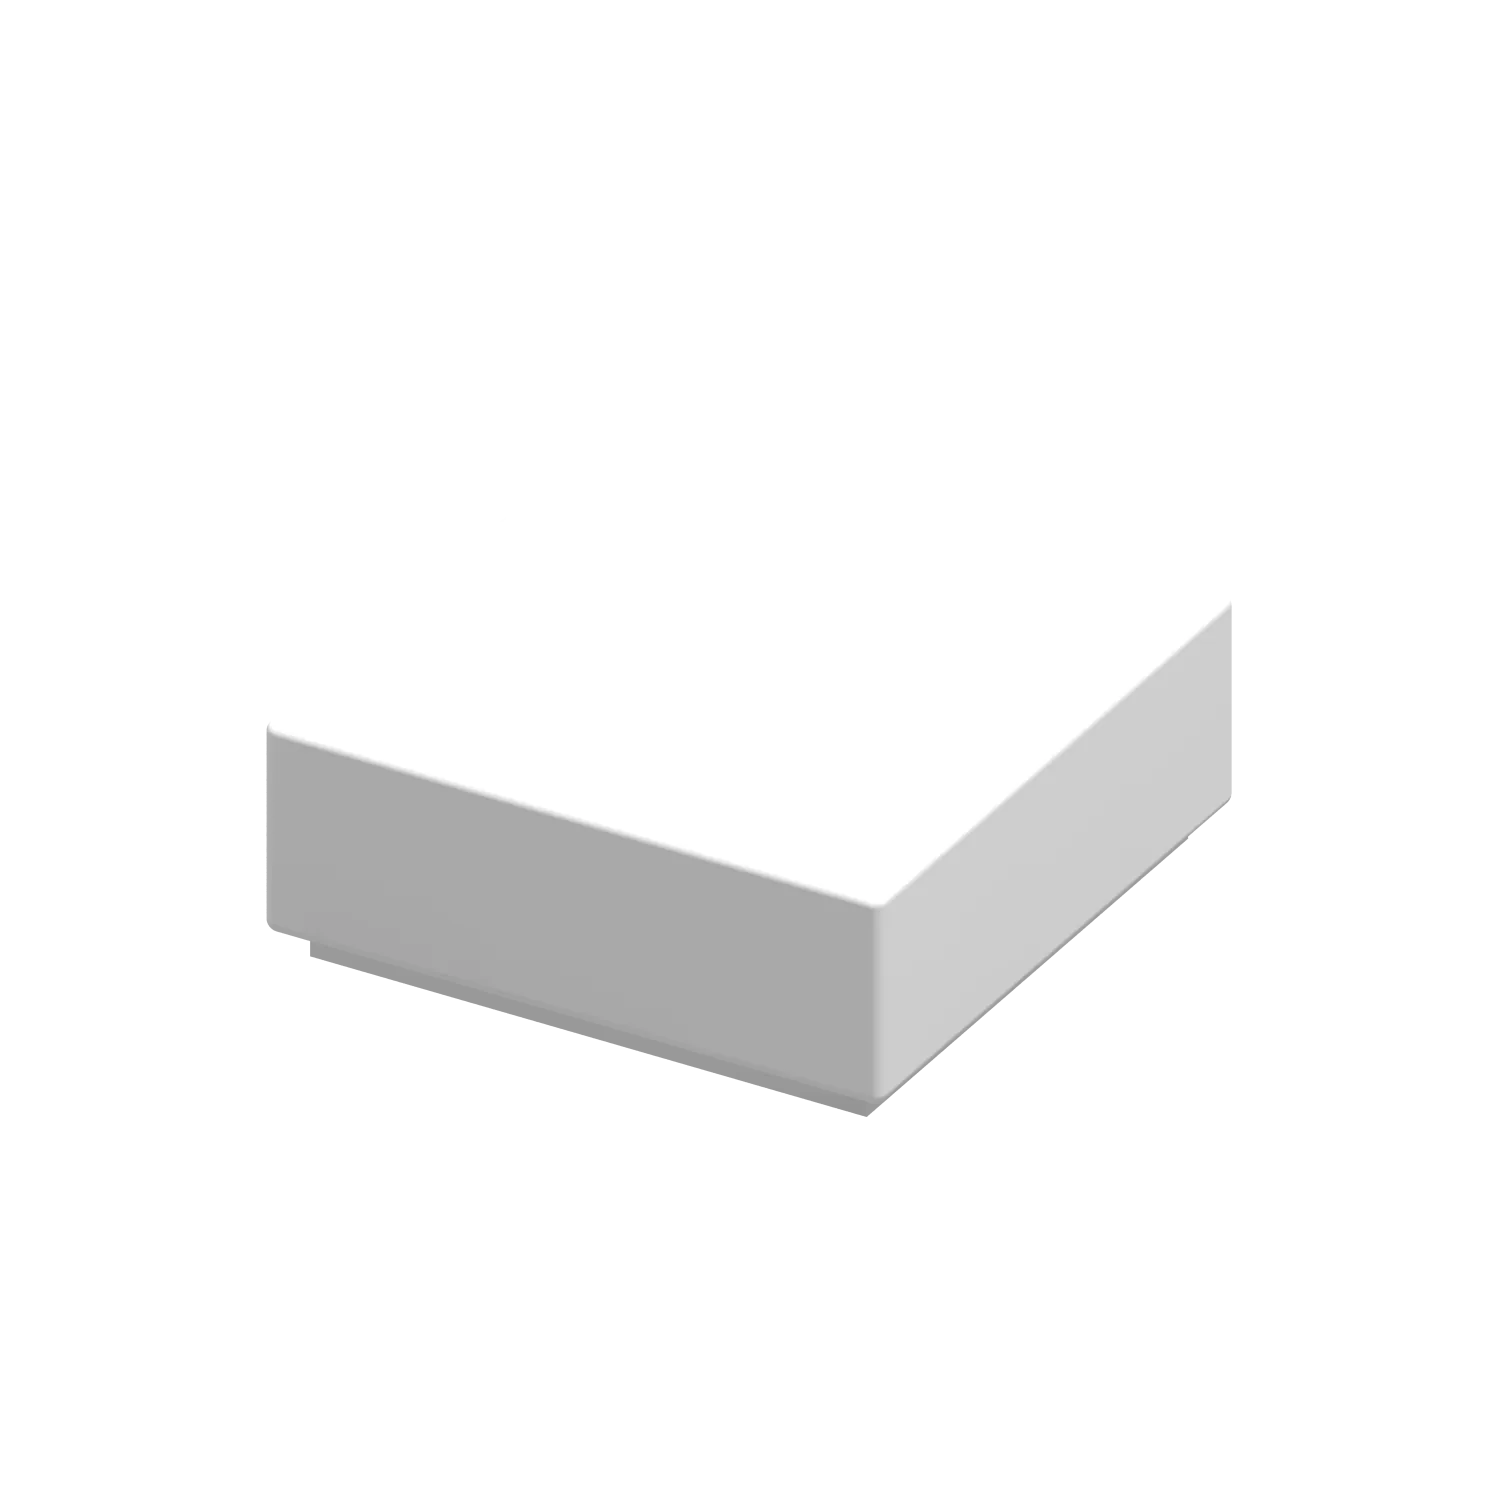 10шт/лот Moc Tile 1 x 1 с канавкой Build Block Brick Part, совместимая с 3070B Образовательная игрушка для детей творческий подарок